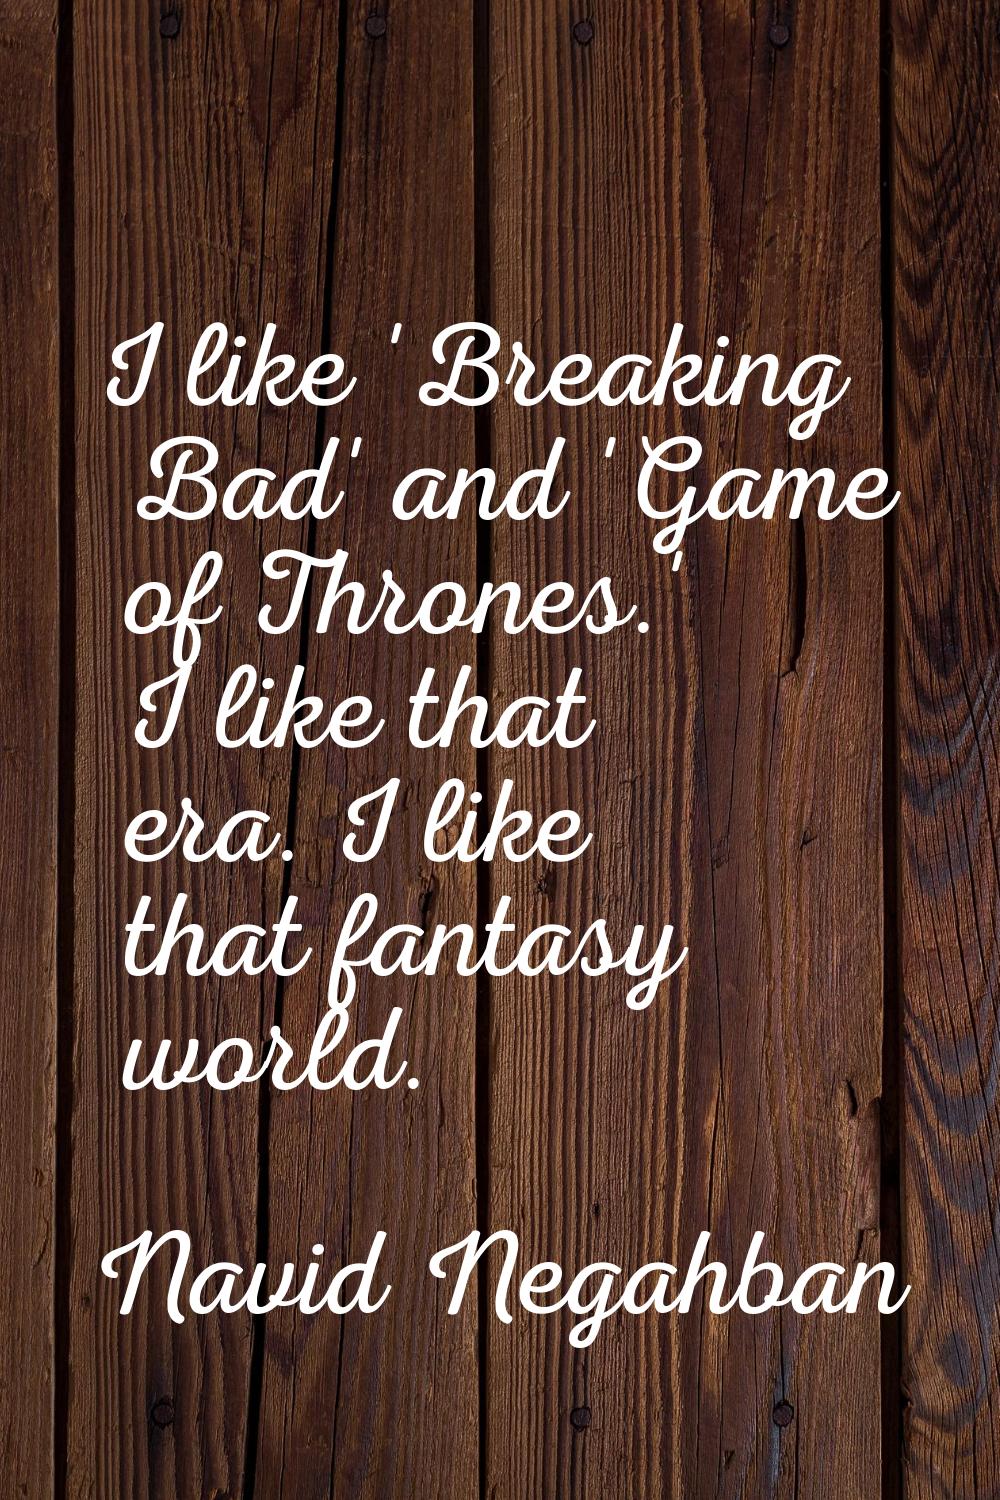 I like 'Breaking Bad' and 'Game of Thrones.' I like that era. I like that fantasy world.